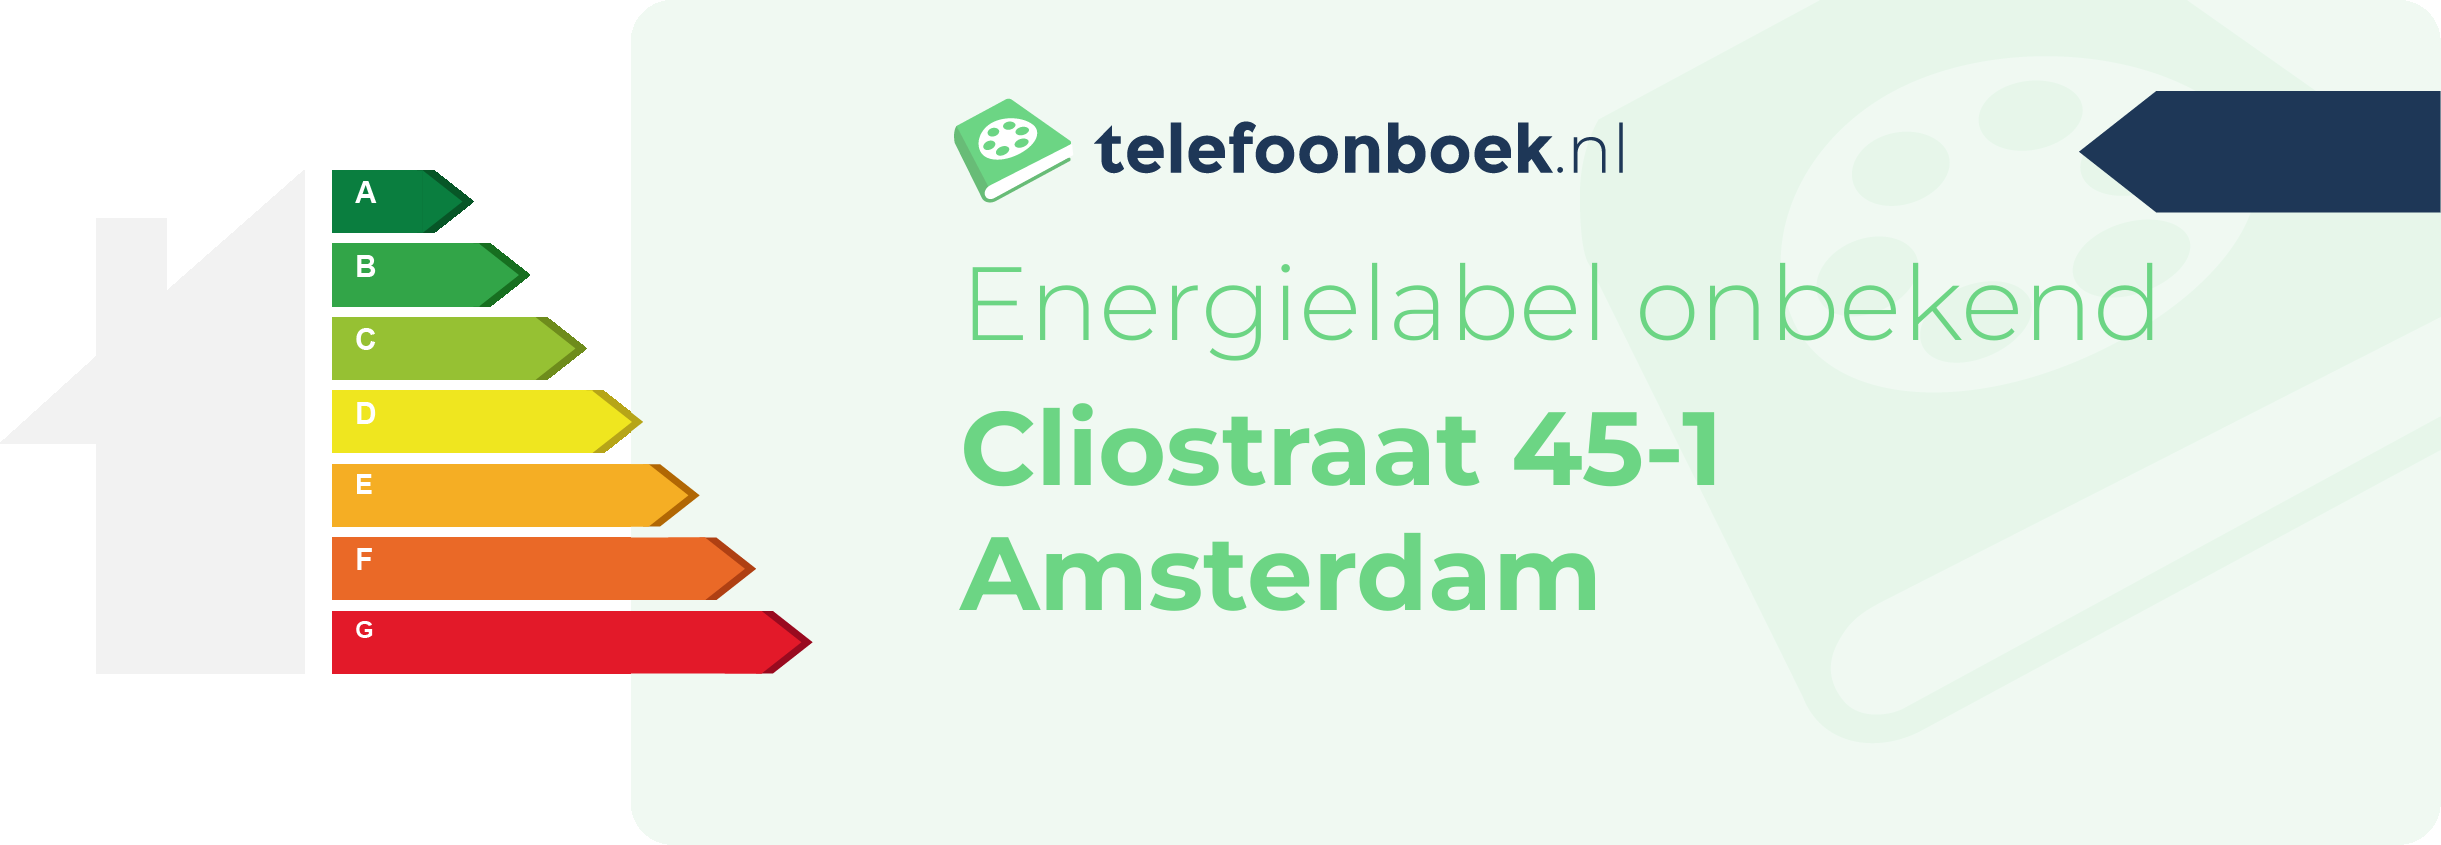 Energielabel Cliostraat 45-1 Amsterdam